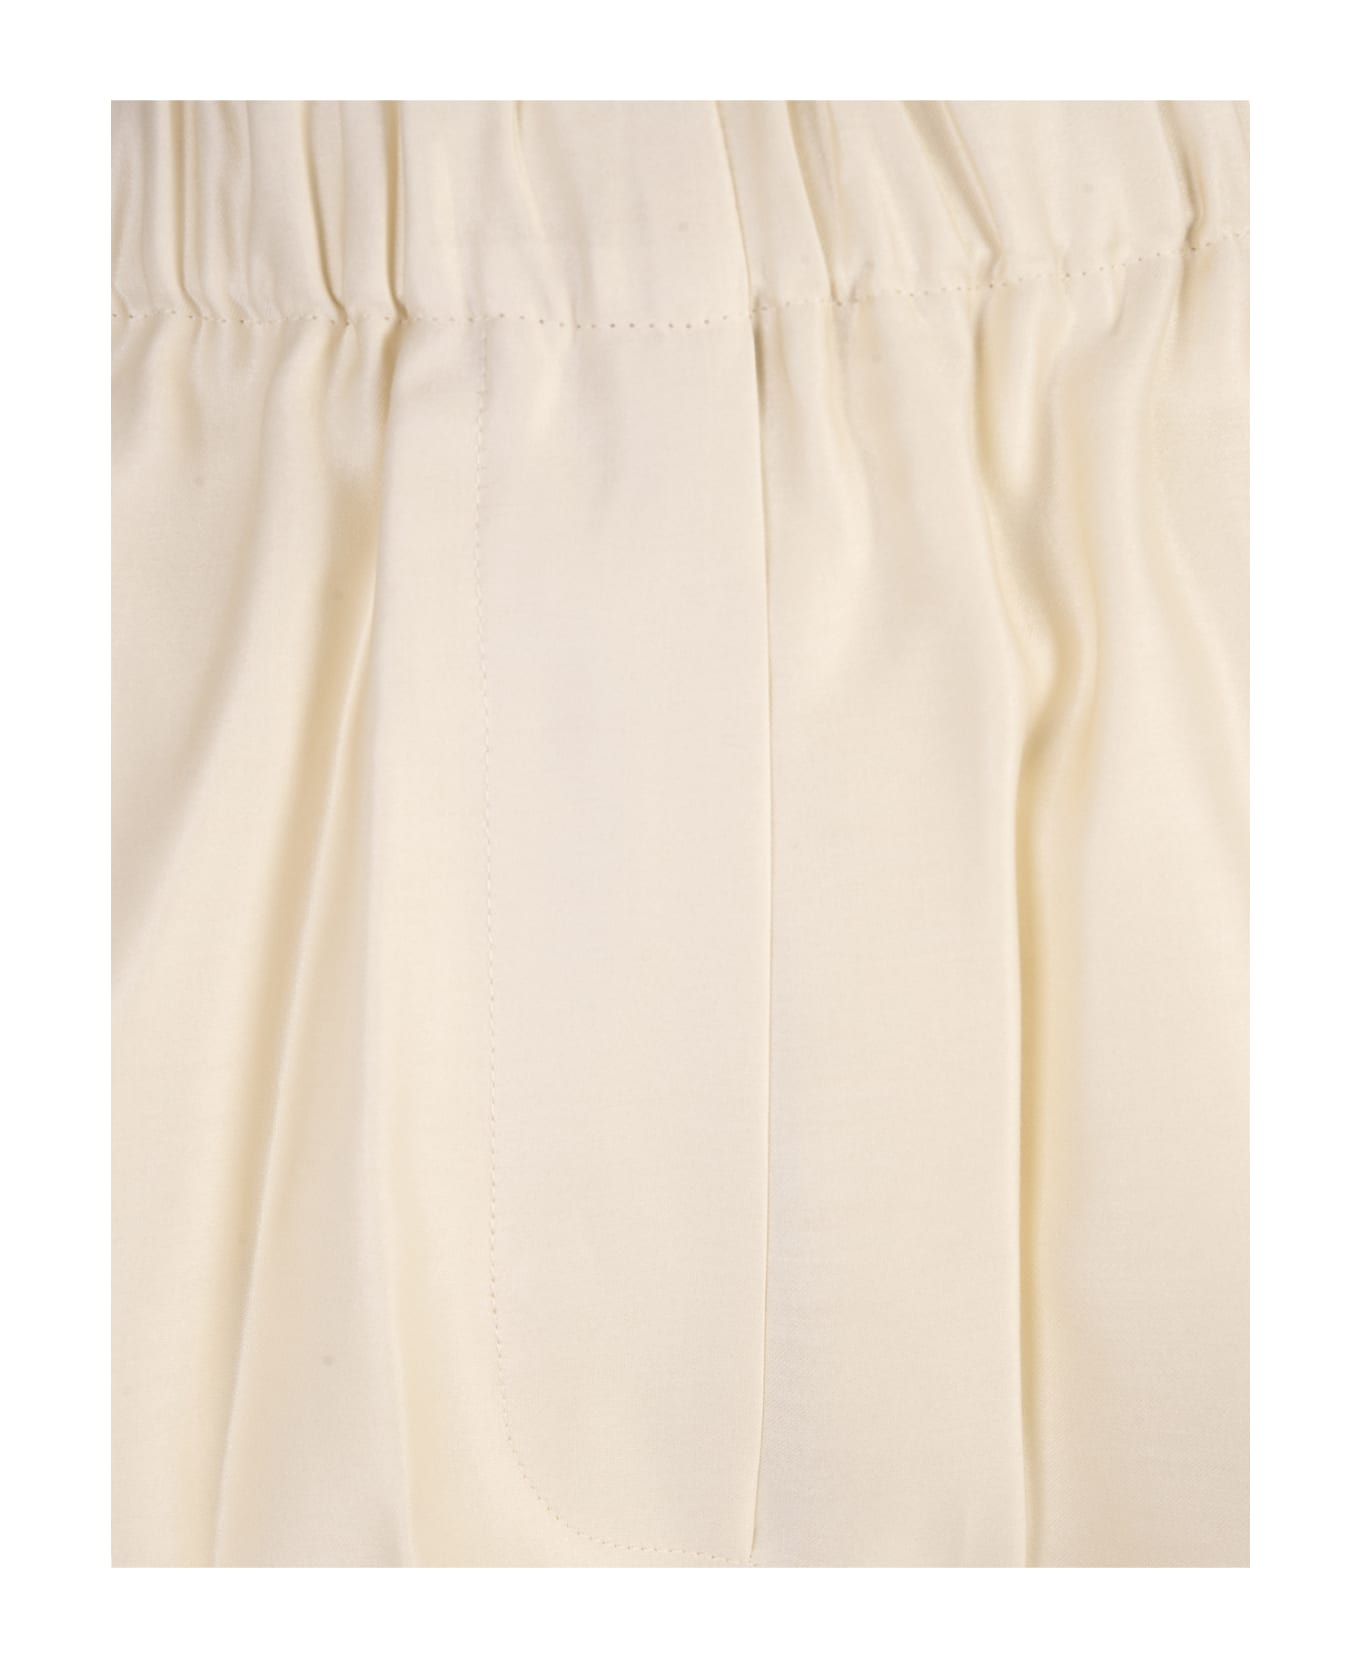 Max Mara Ivory White Piadena Shorts - White